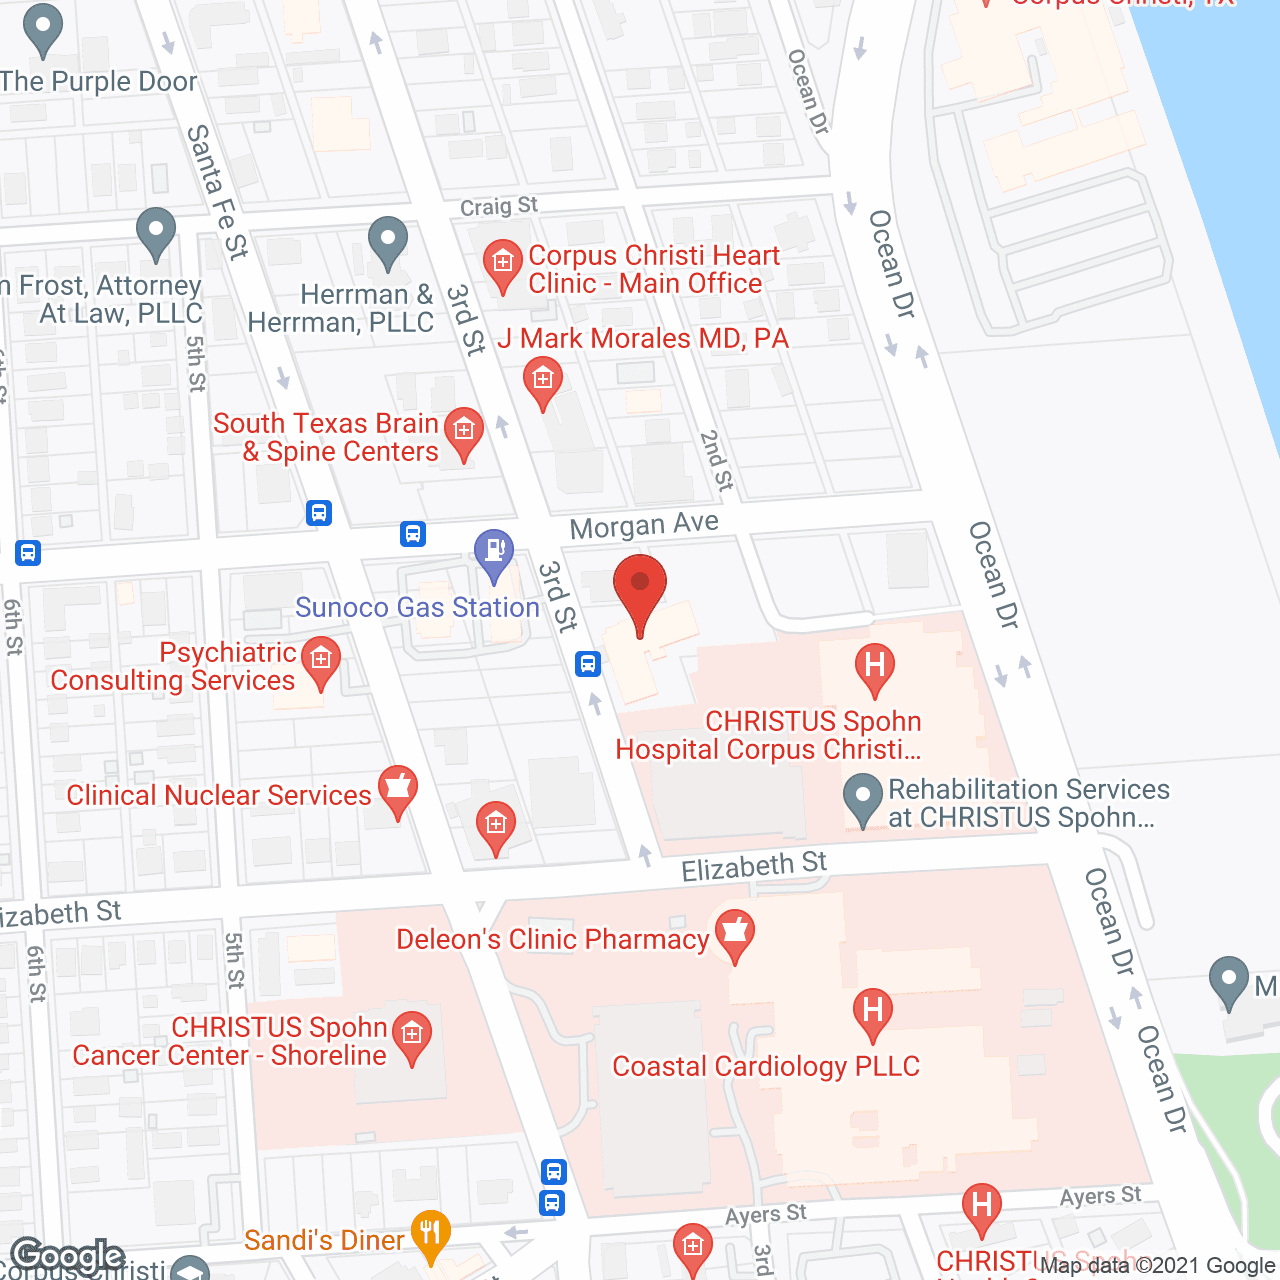 Vista Del Mar Health & Rehab in google map